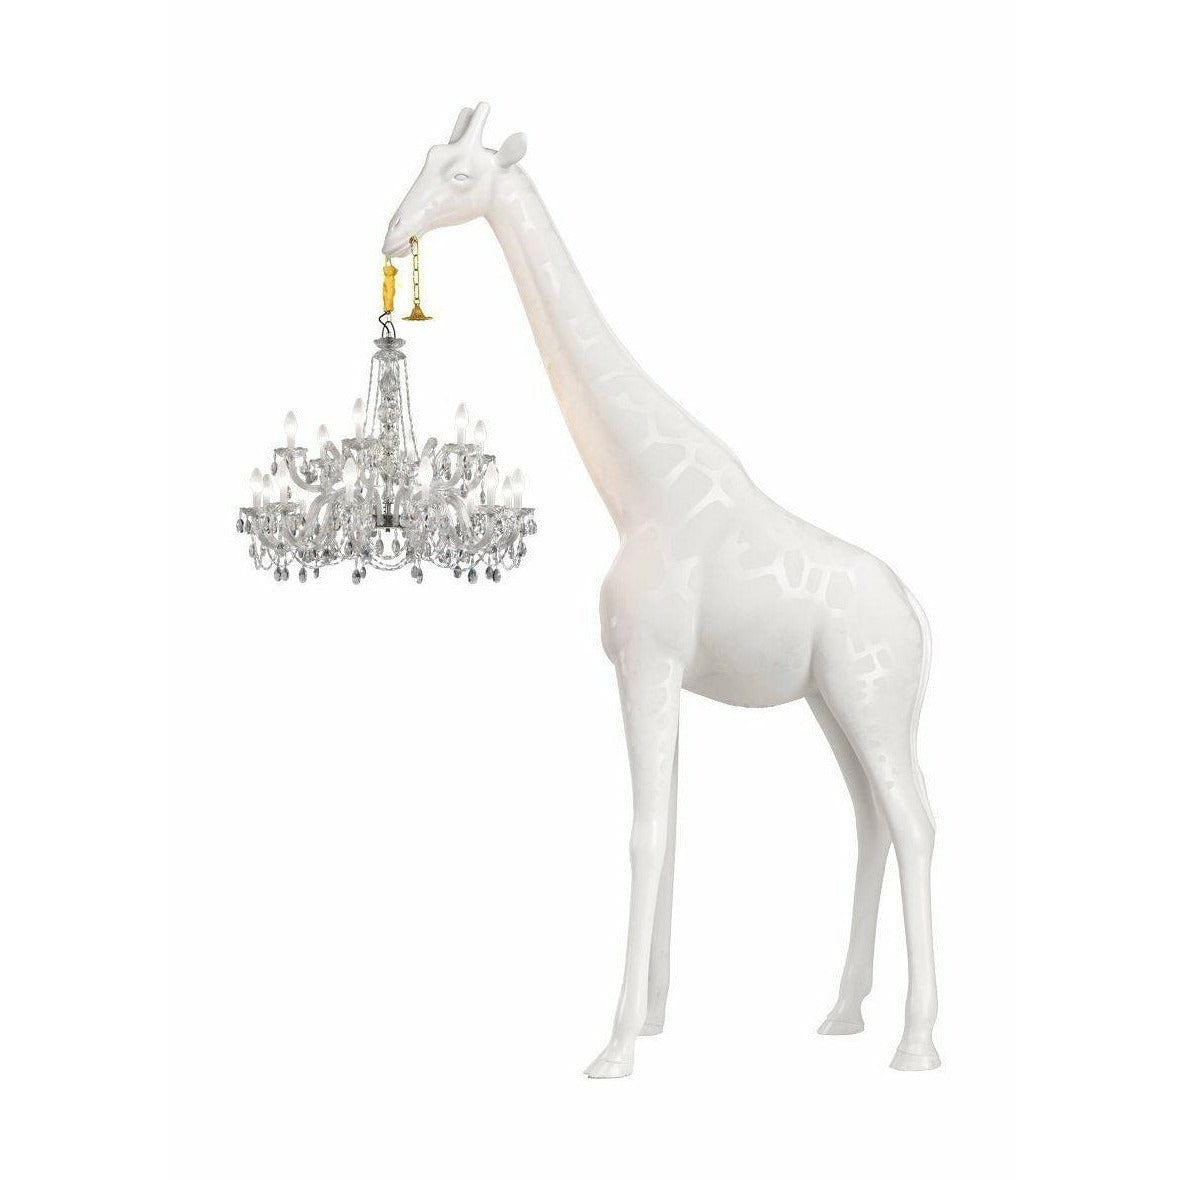 QEEBOO GIRAFFE IN LIEBE OUTDOOR SHOHR LAMP H 4M, Weiß